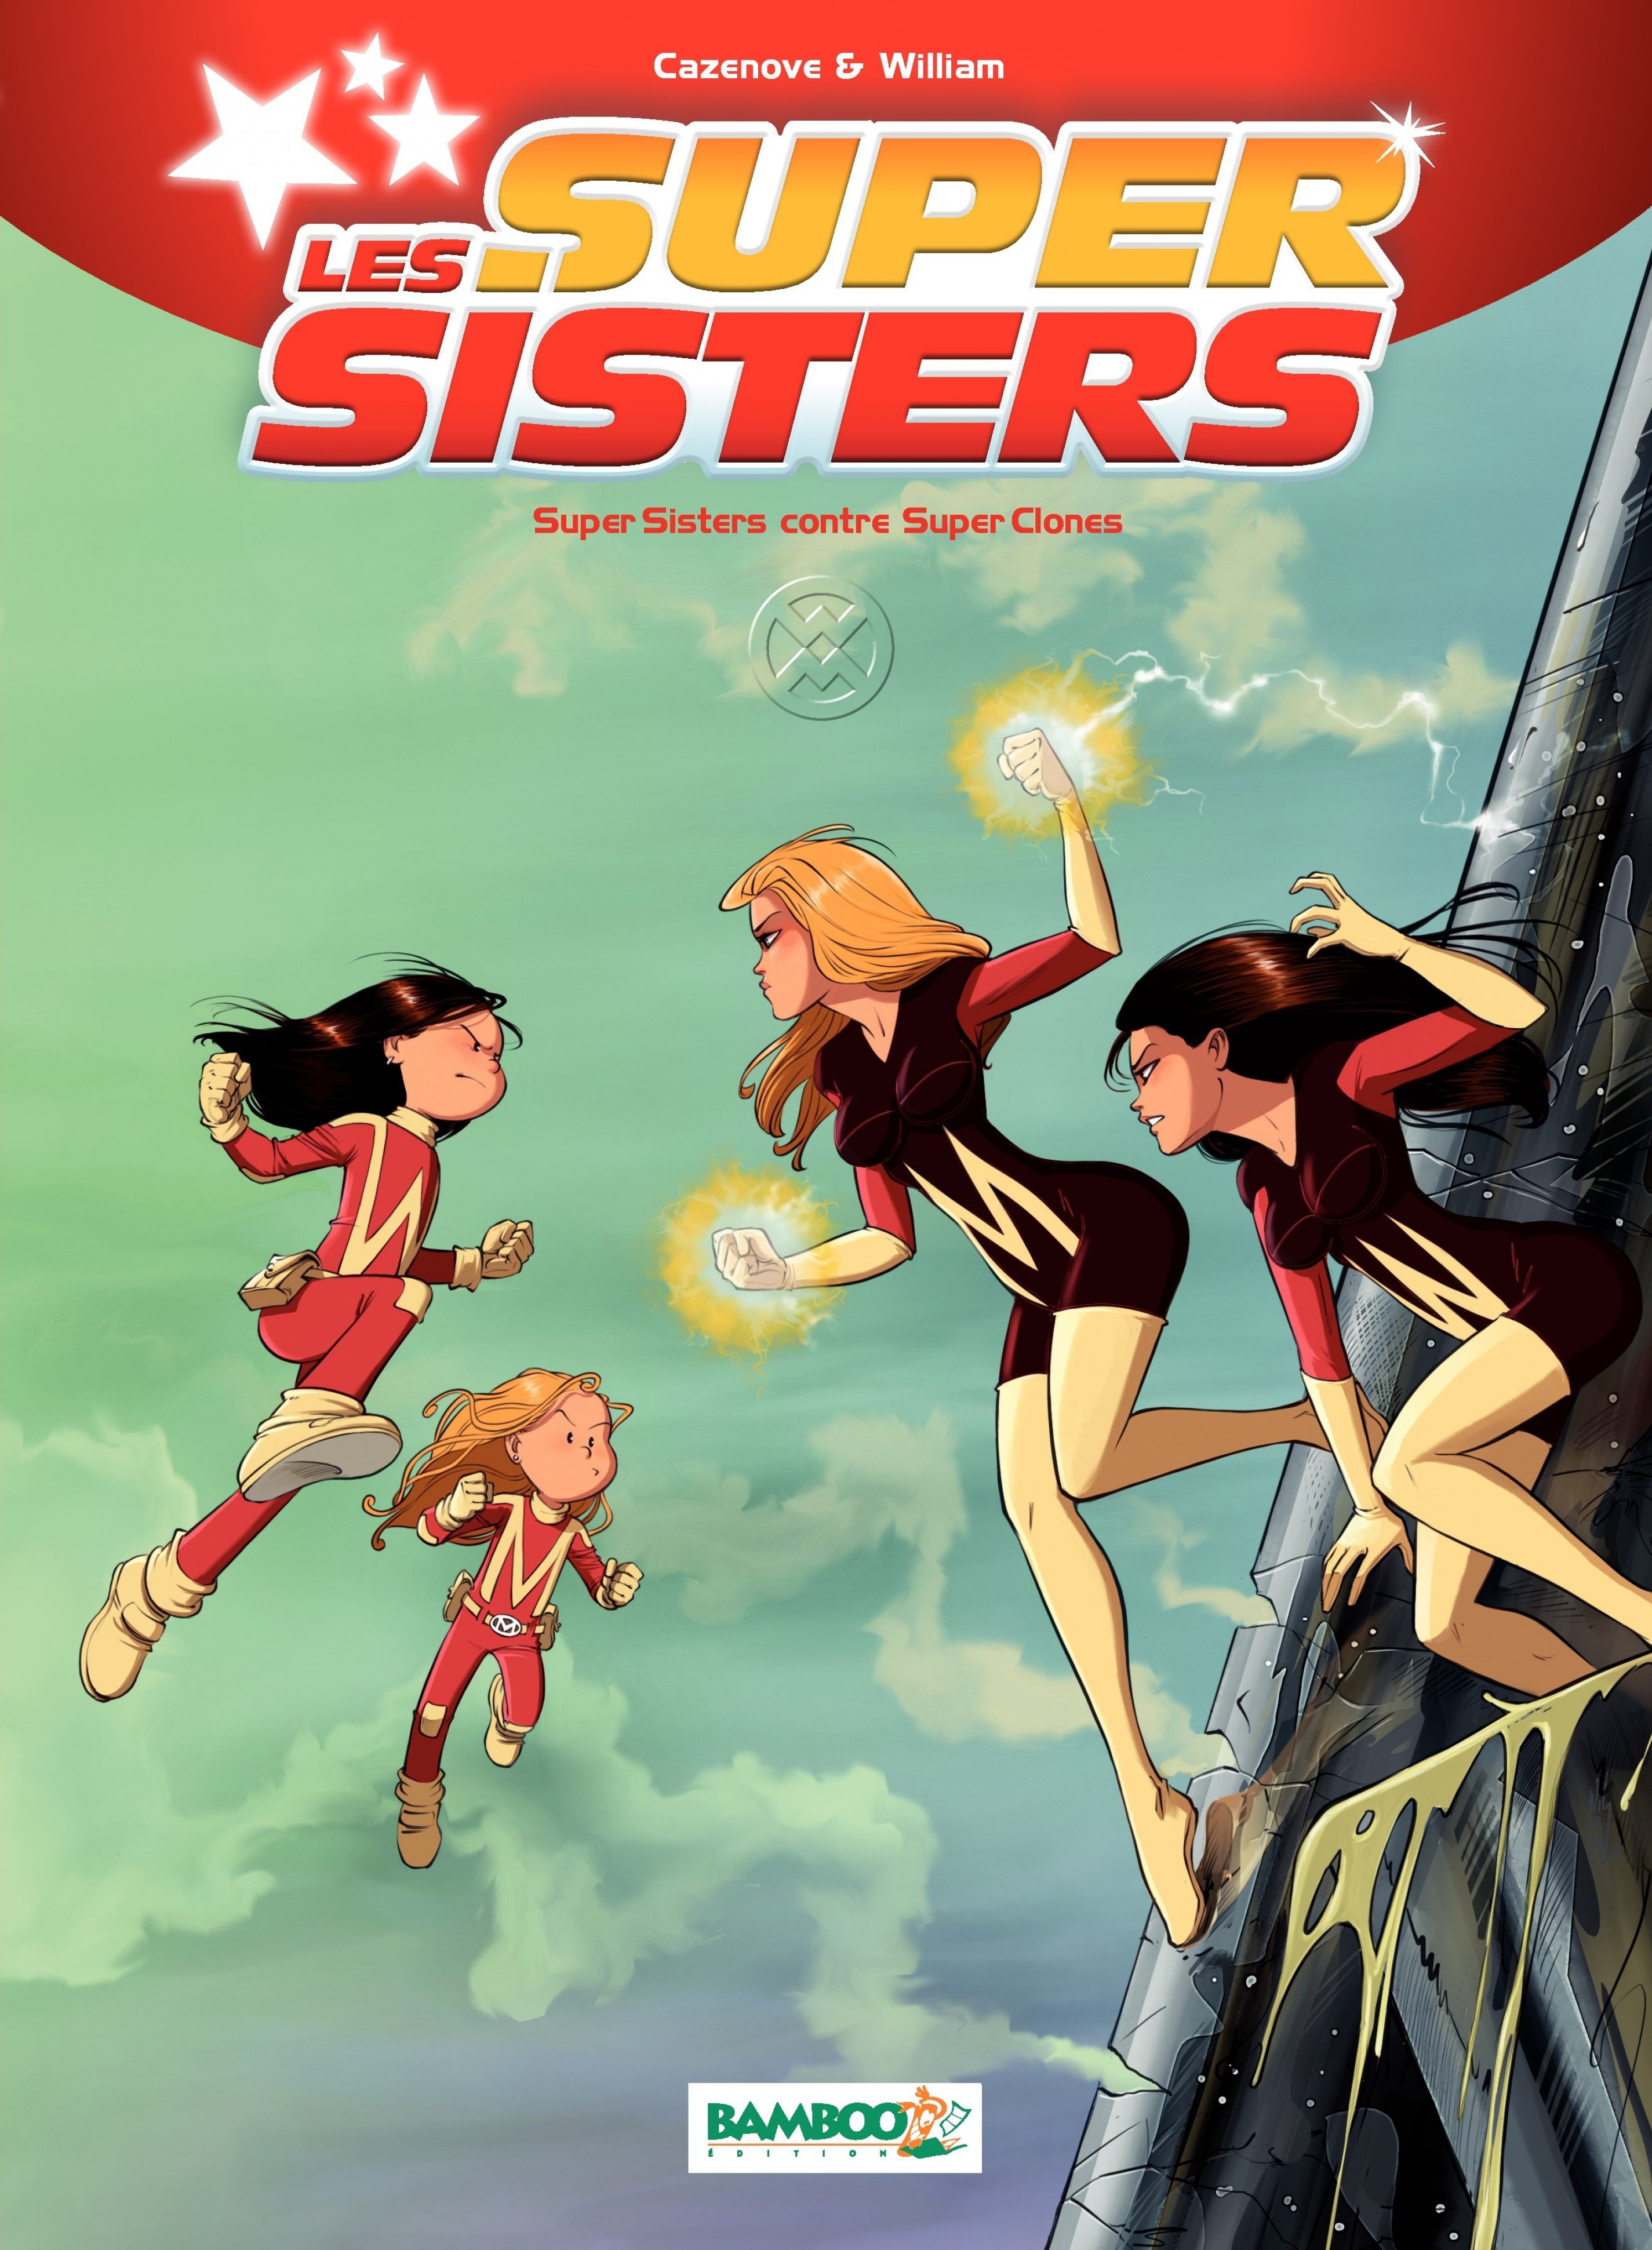 Résultat de recherche d'images pour "bd les super sisters"